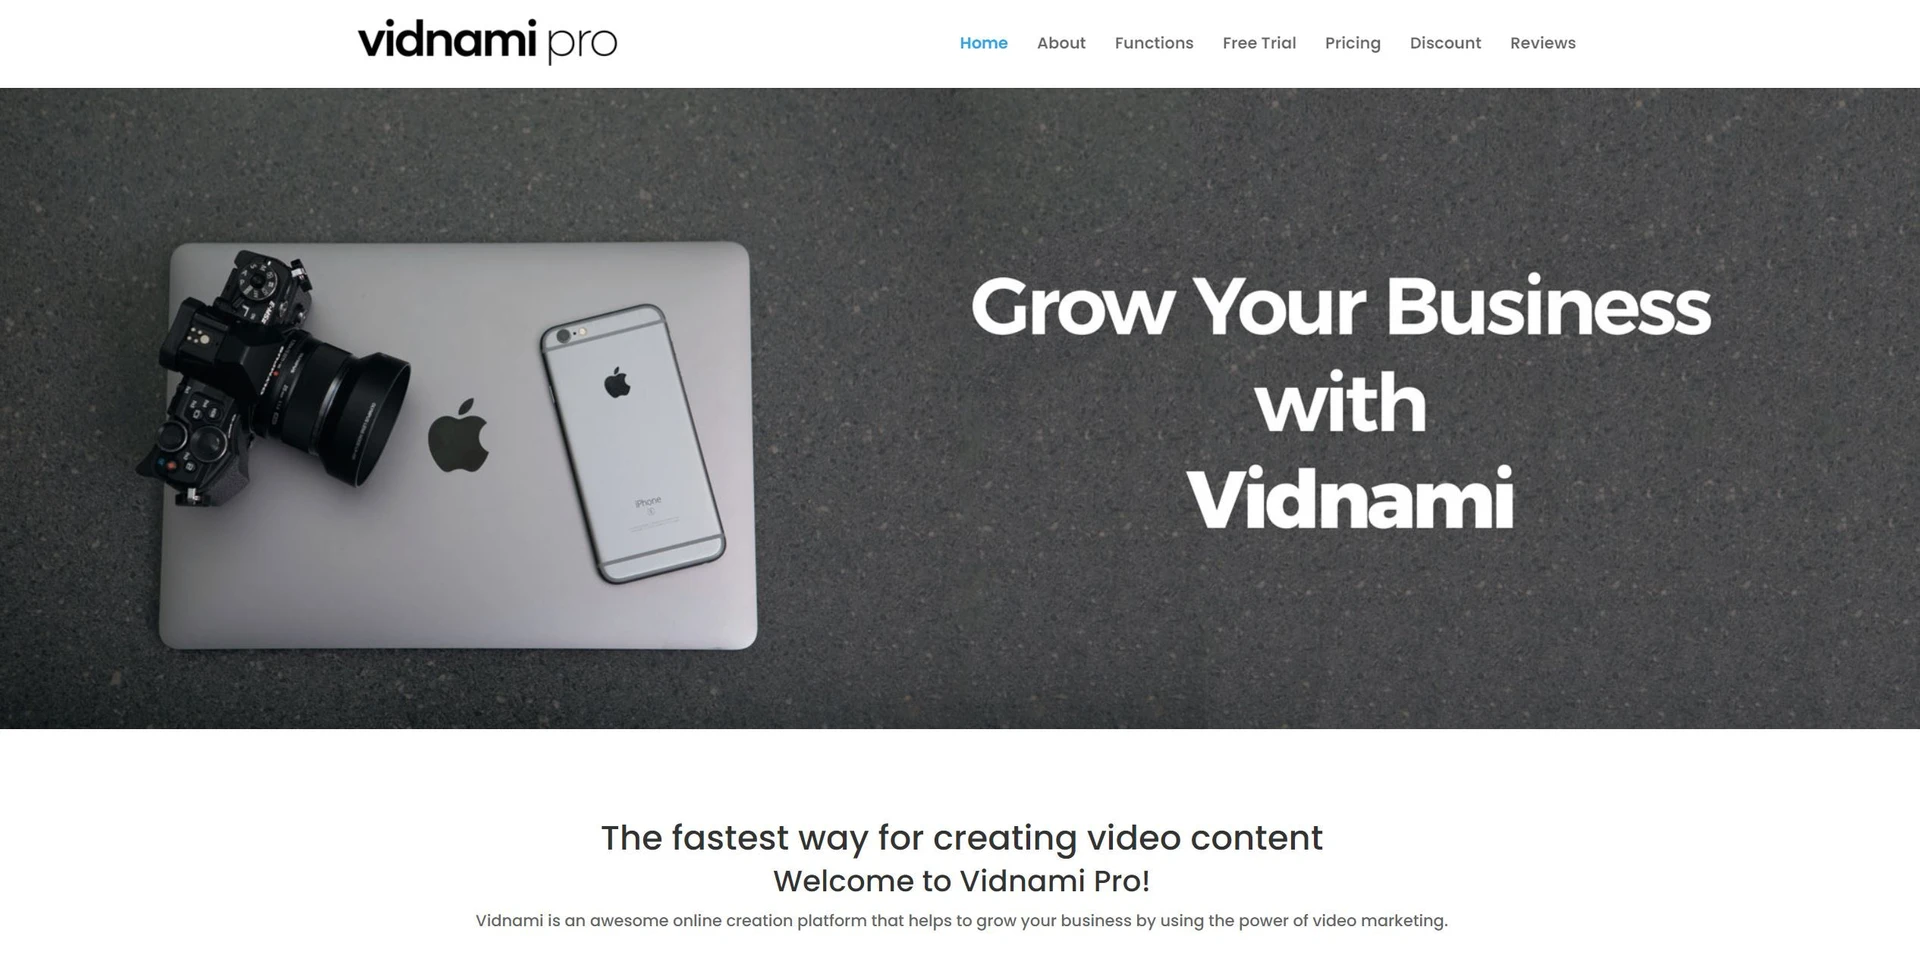 Vidnami Prowebsite picture